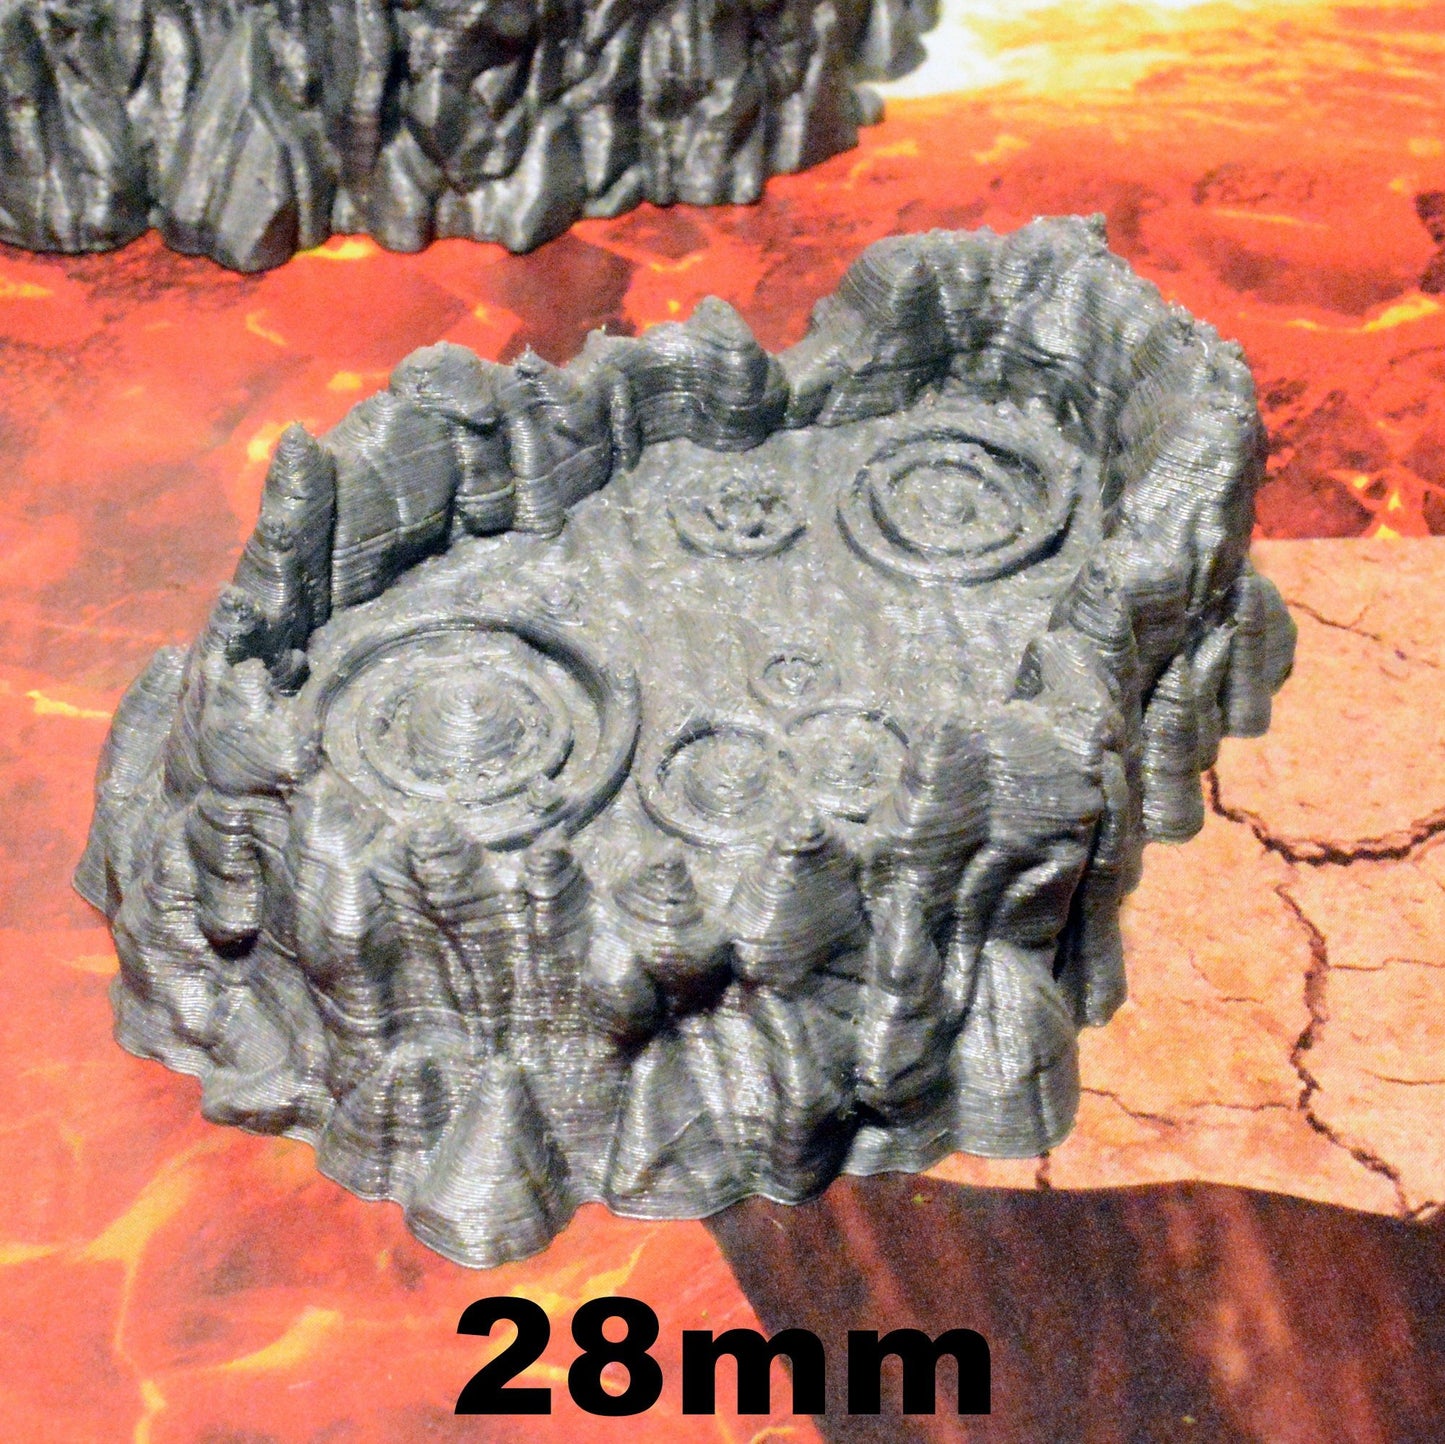 Burbling Lava Pits 15mm 28mm for D&D Terrain, DnD Pathfinder Warhammer 40k Demon Terrain, Fire Molten Magma